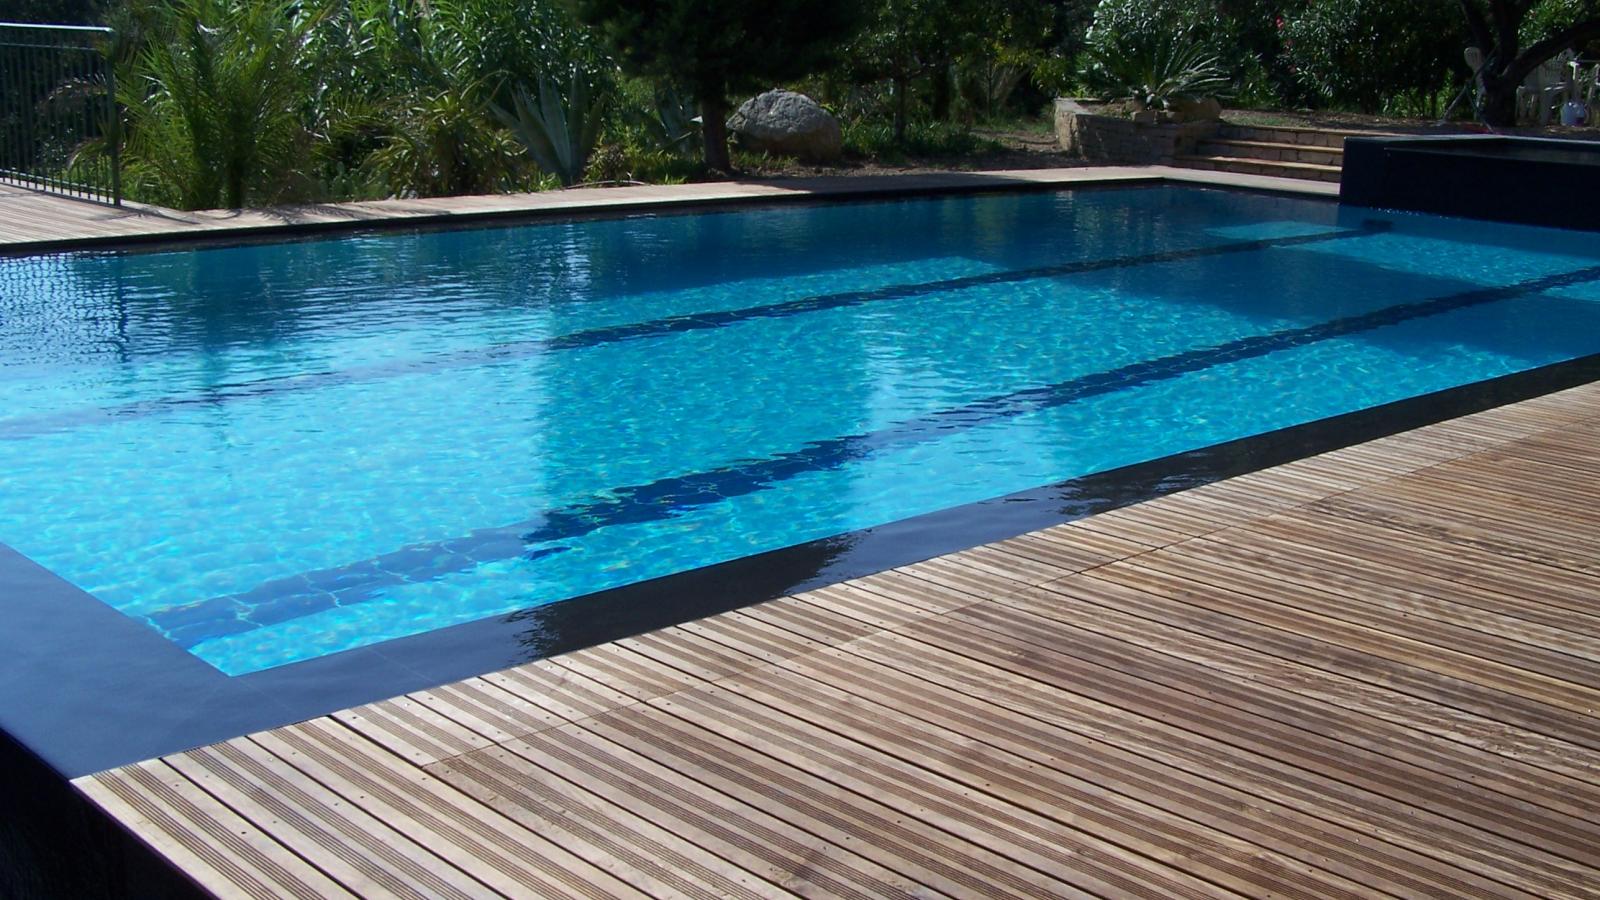 Le bois : terrasse, bord de piscine, clôtures